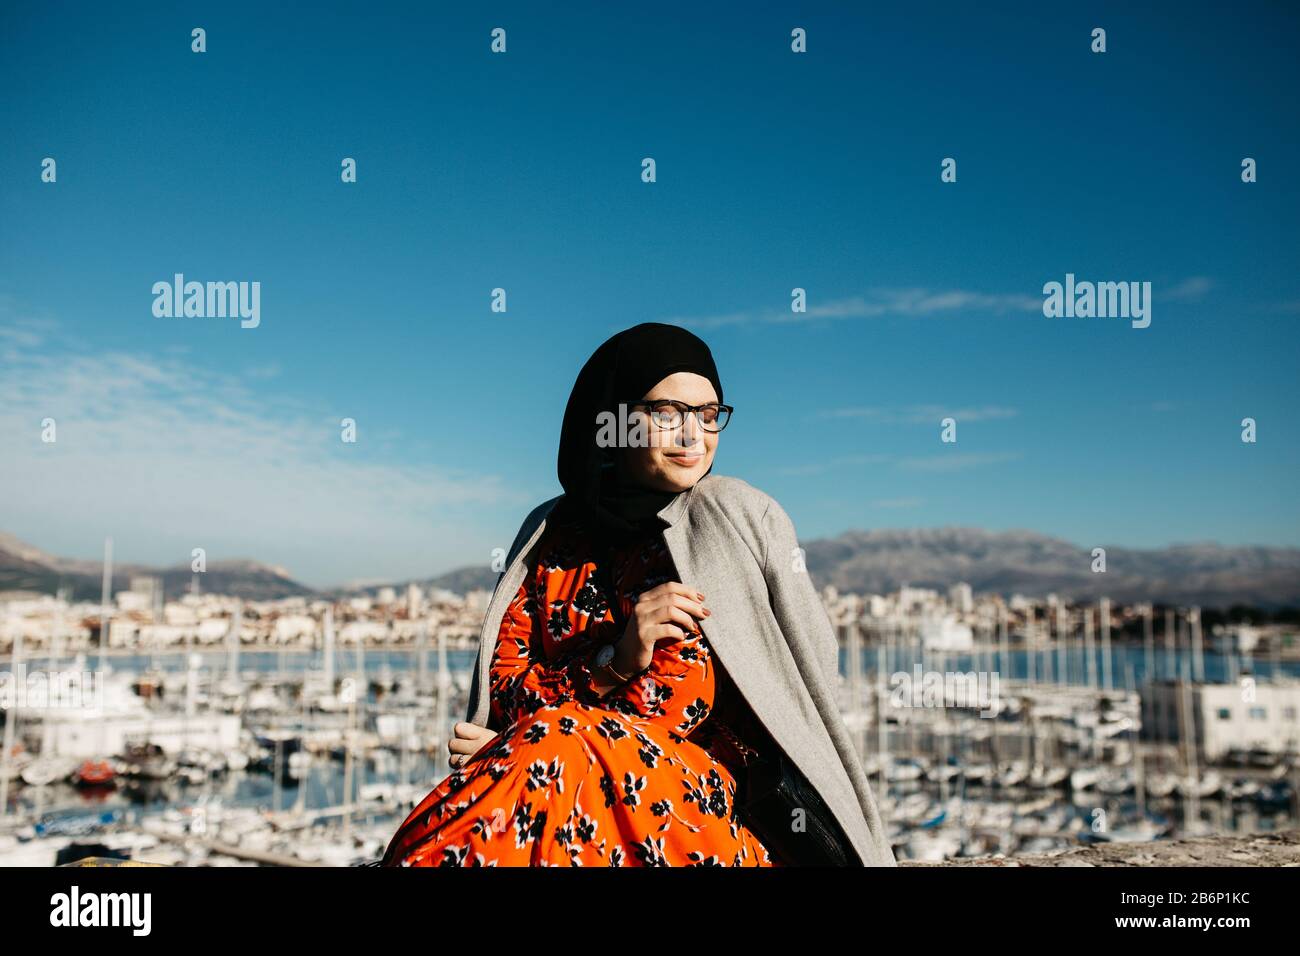 Portrait de jeunes femmes musulmanes européennes avec hijab assis sur la plage de pierre avec mer et port en arrière-plan. Elle est heureuse et profite du soleil. Banque D'Images